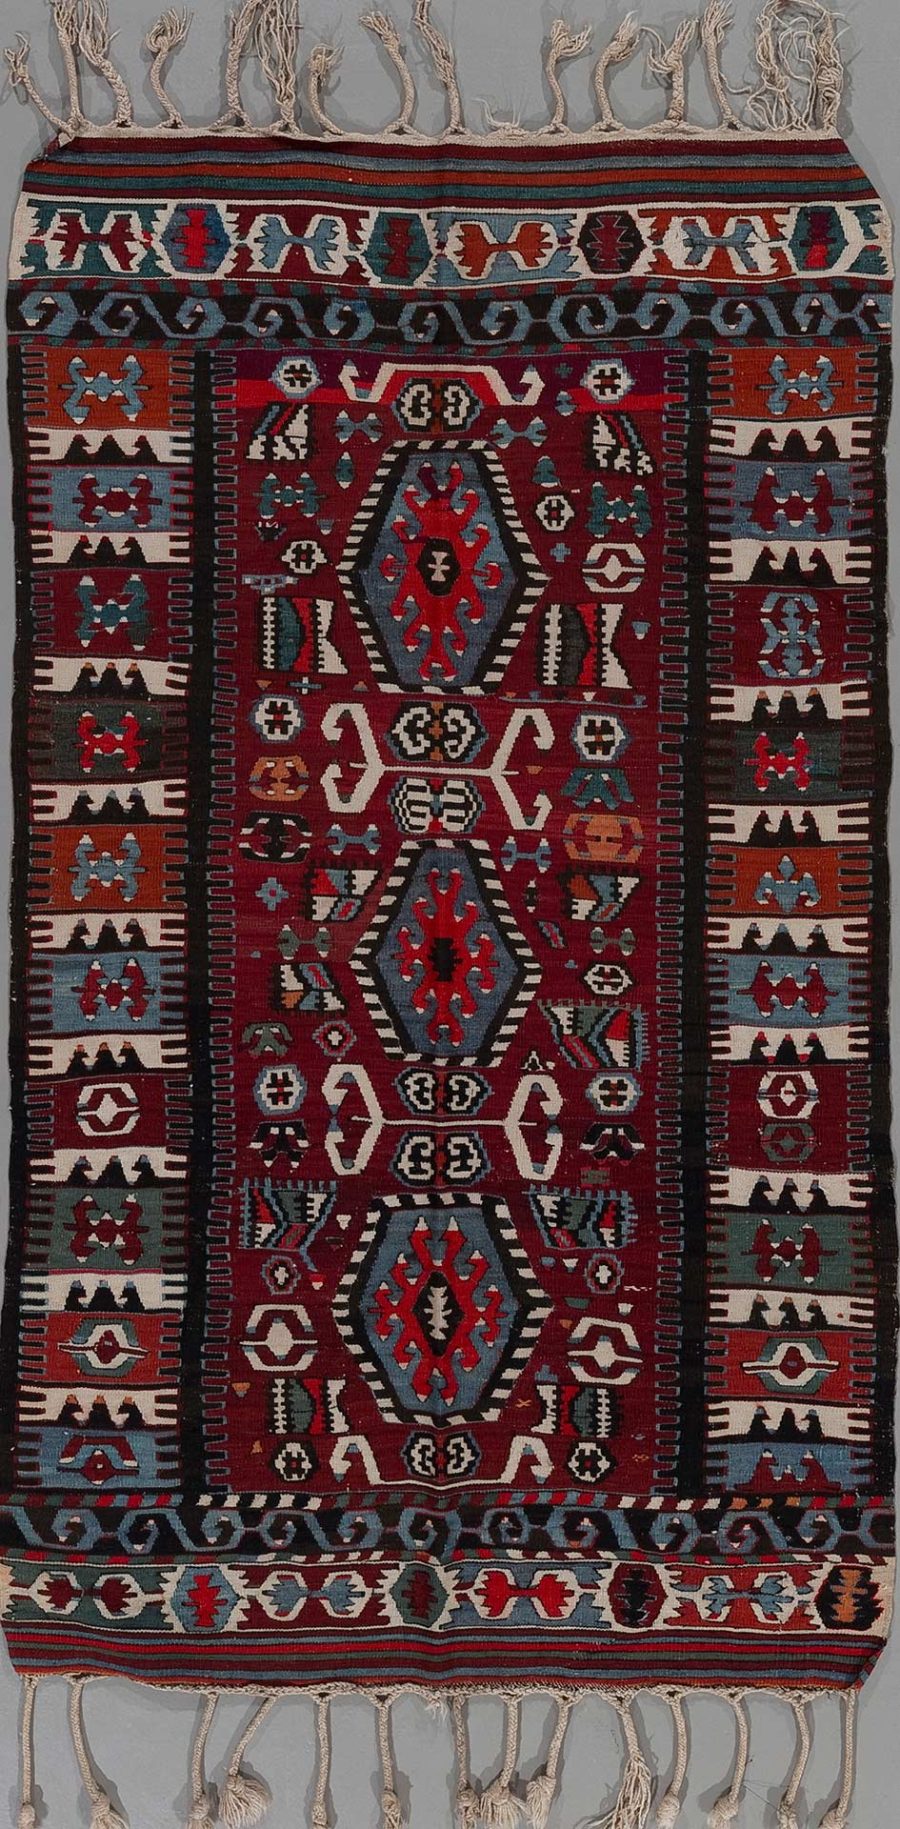 Traditioneller handgewebter Teppich mit komplizierten Mustern in Rot, Schwarz, Weiß und Blautönen, versehen mit Fransen an den Enden.